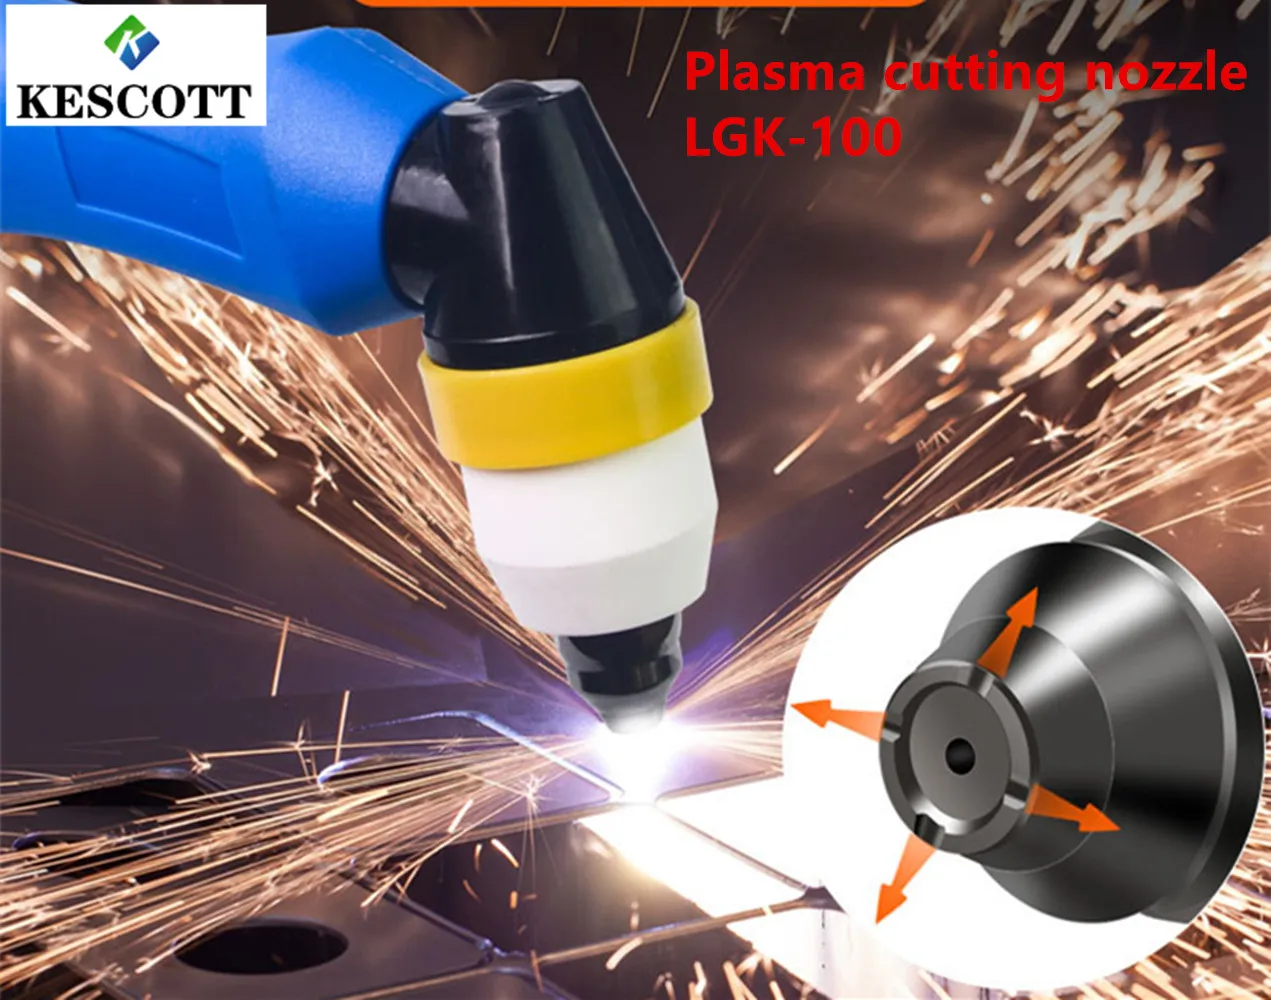 

KESCOTT P80 dysza do plazmy akcesoria do maszyn tnących głowica palnika dysza elektrody Contactable złom LGK-100